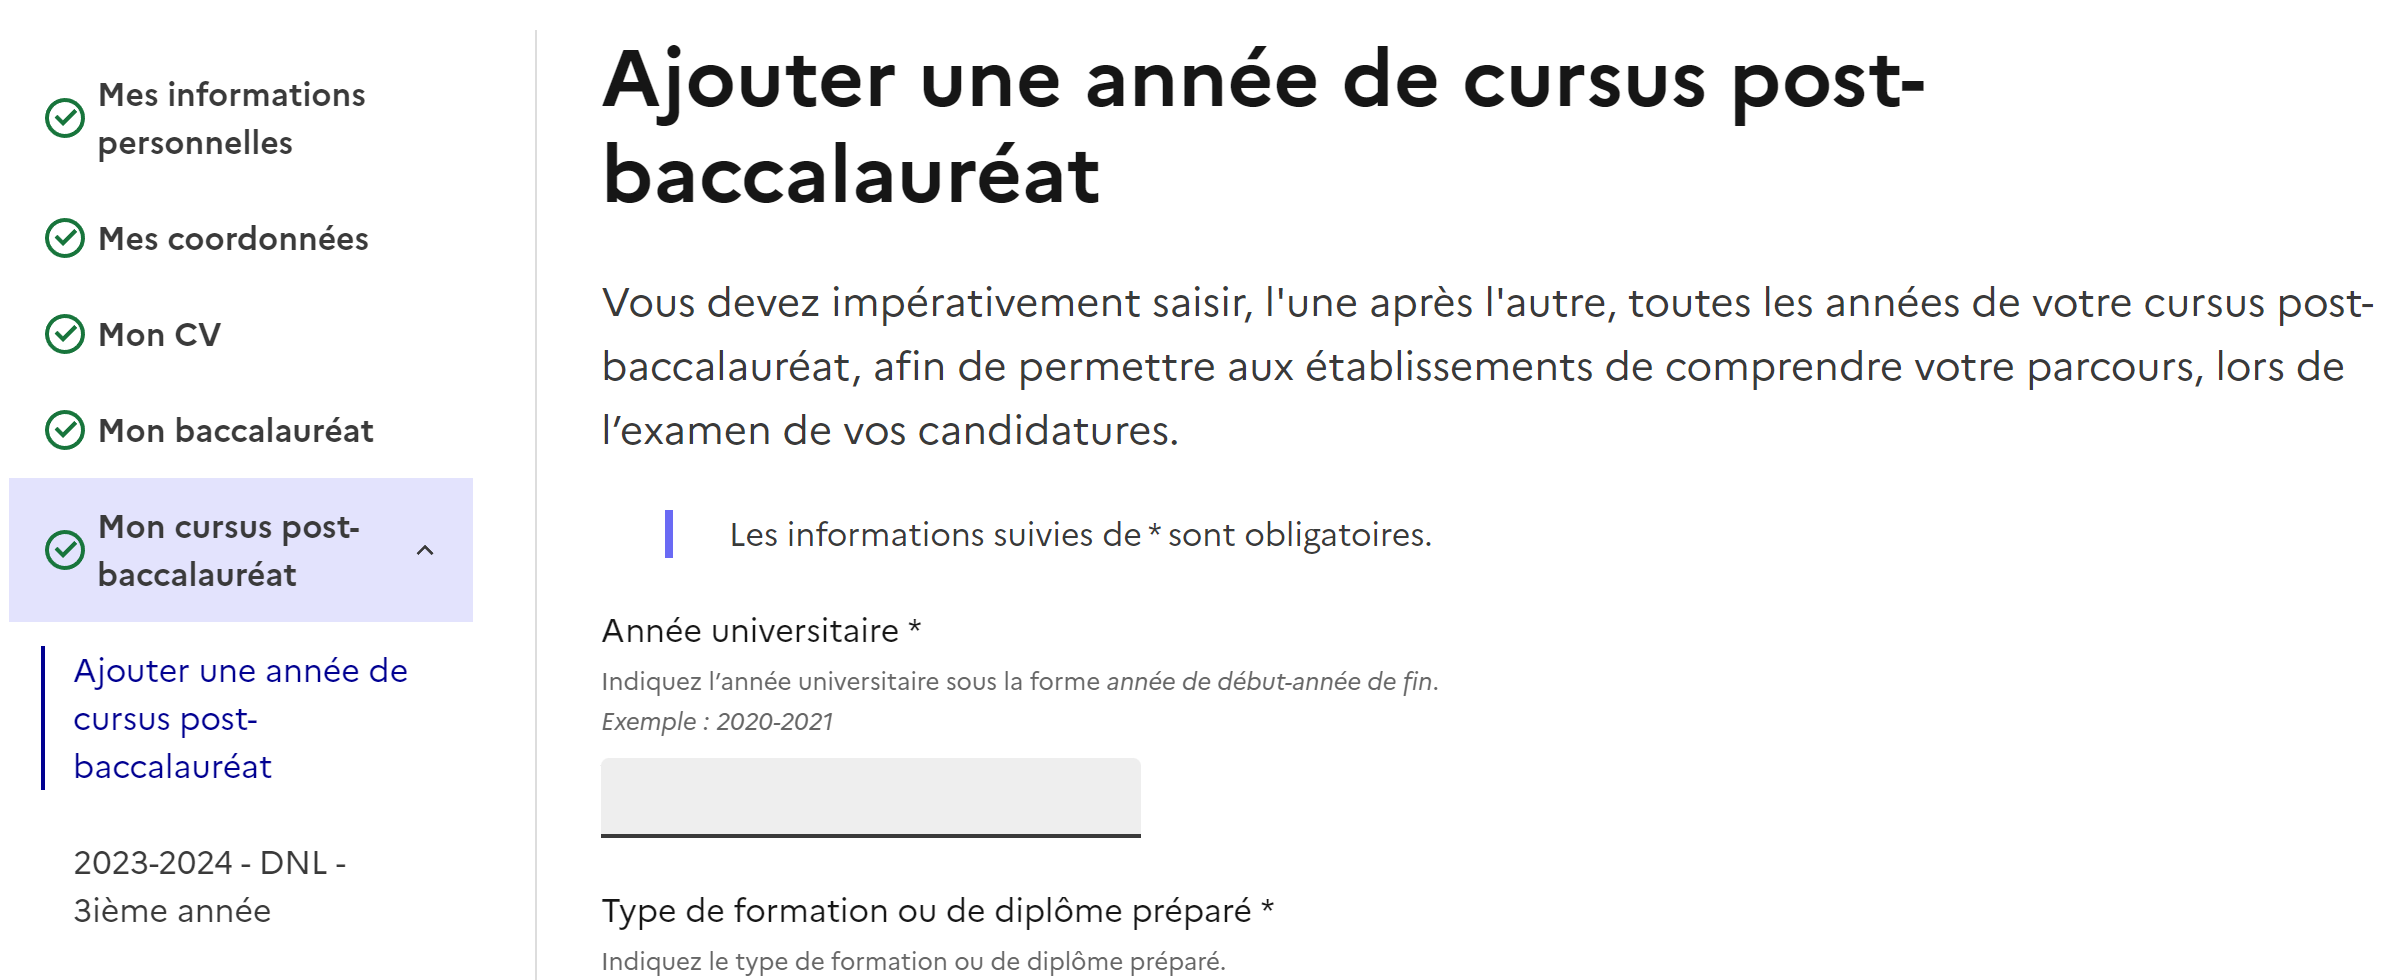 Bouton "Ajouter une année de cursus post-baccalauréat".